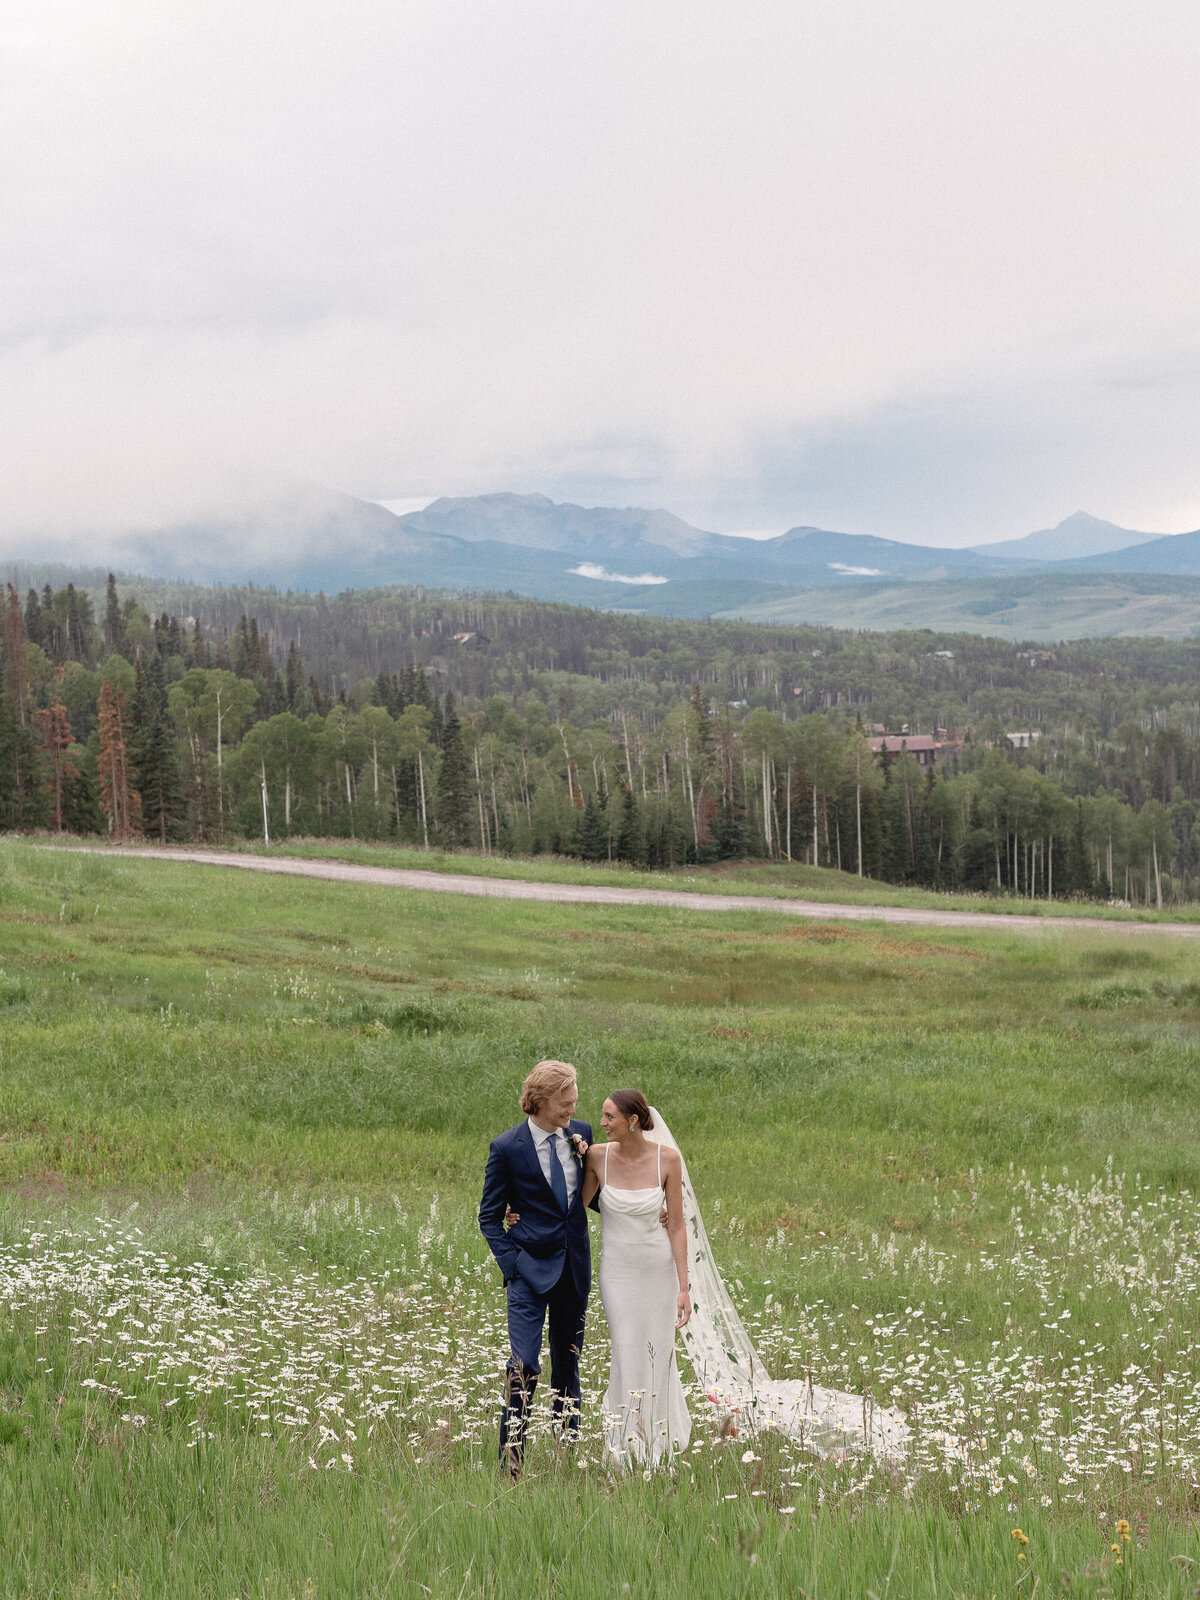 Logan & Ben - Fashion-Forward Mountaintop Wedding in Telluride, Colorado-46